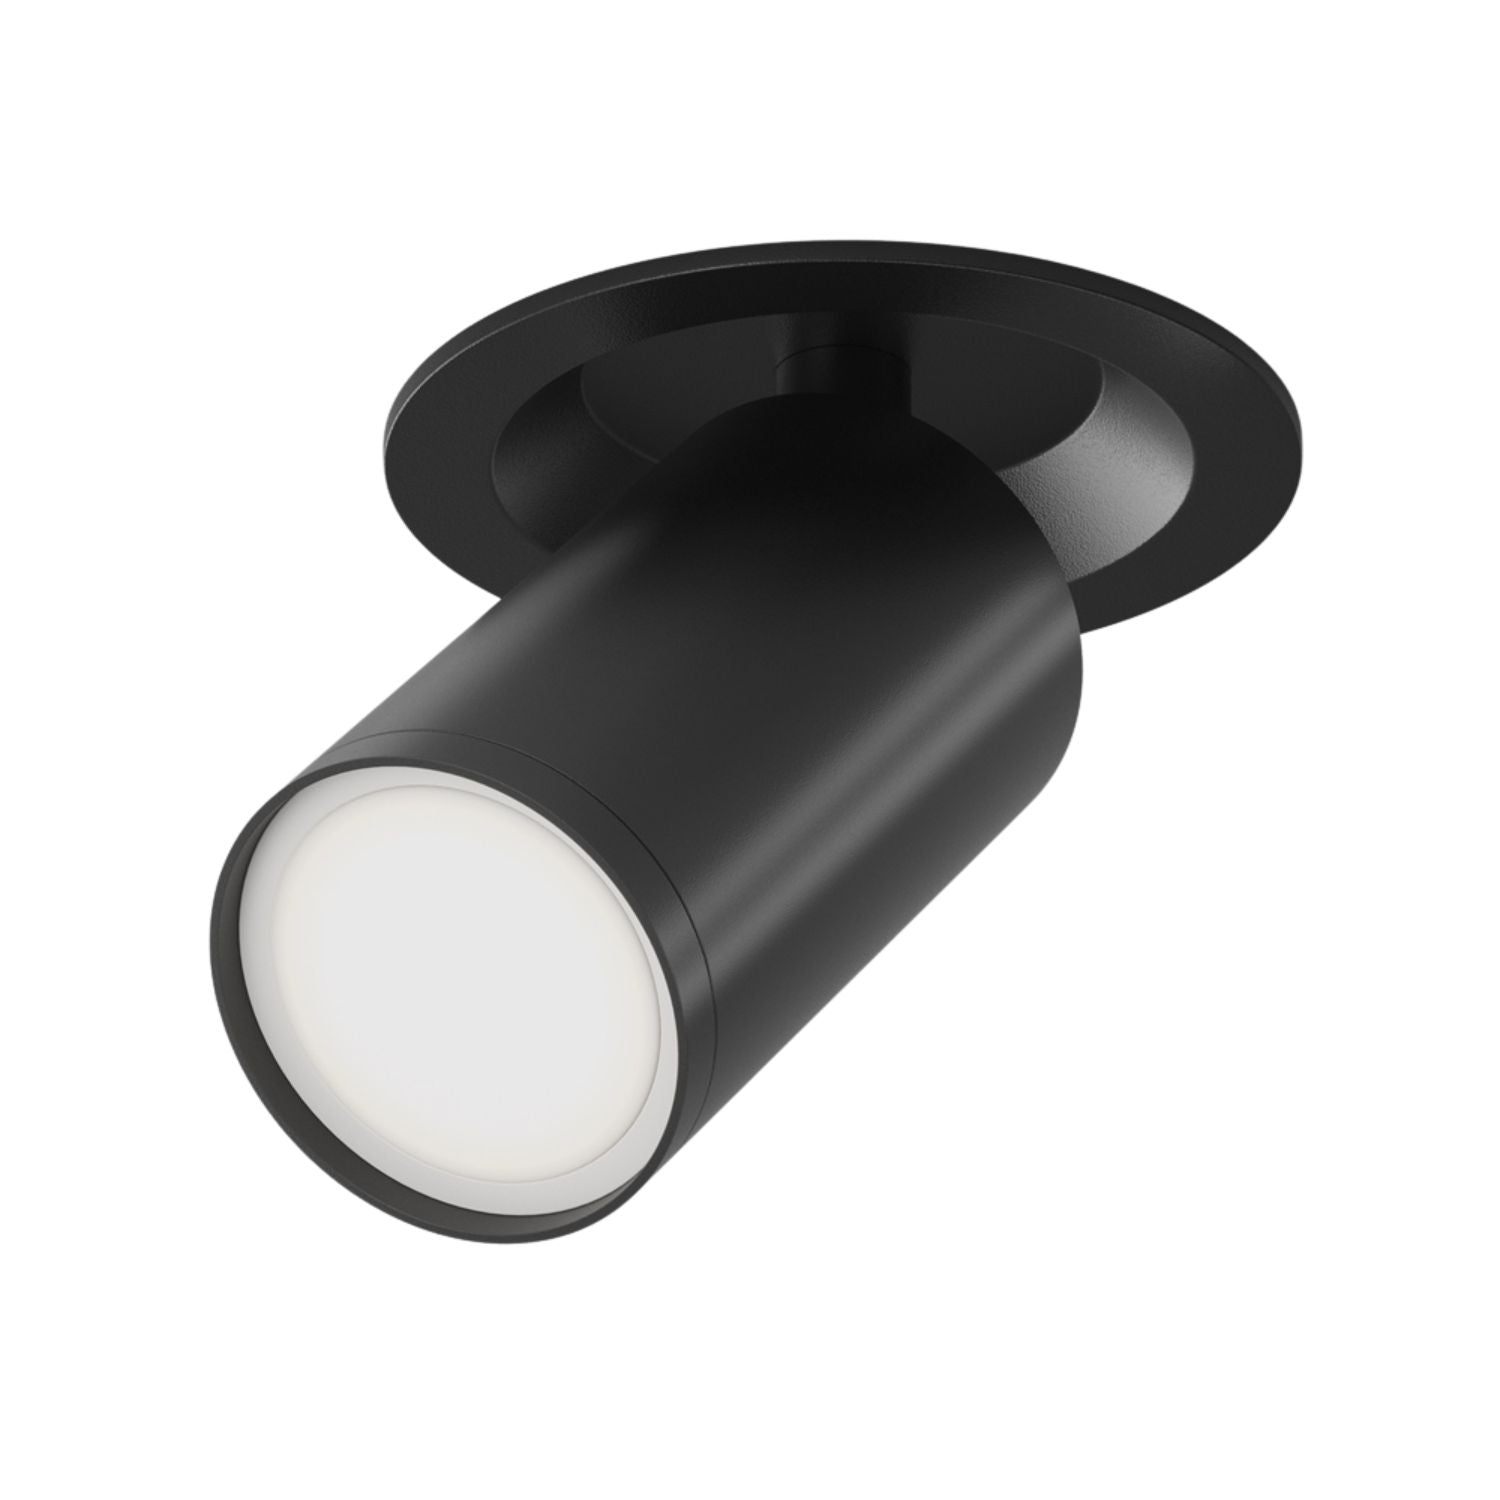 FOCUS S - Modern adjustable wall spotlight